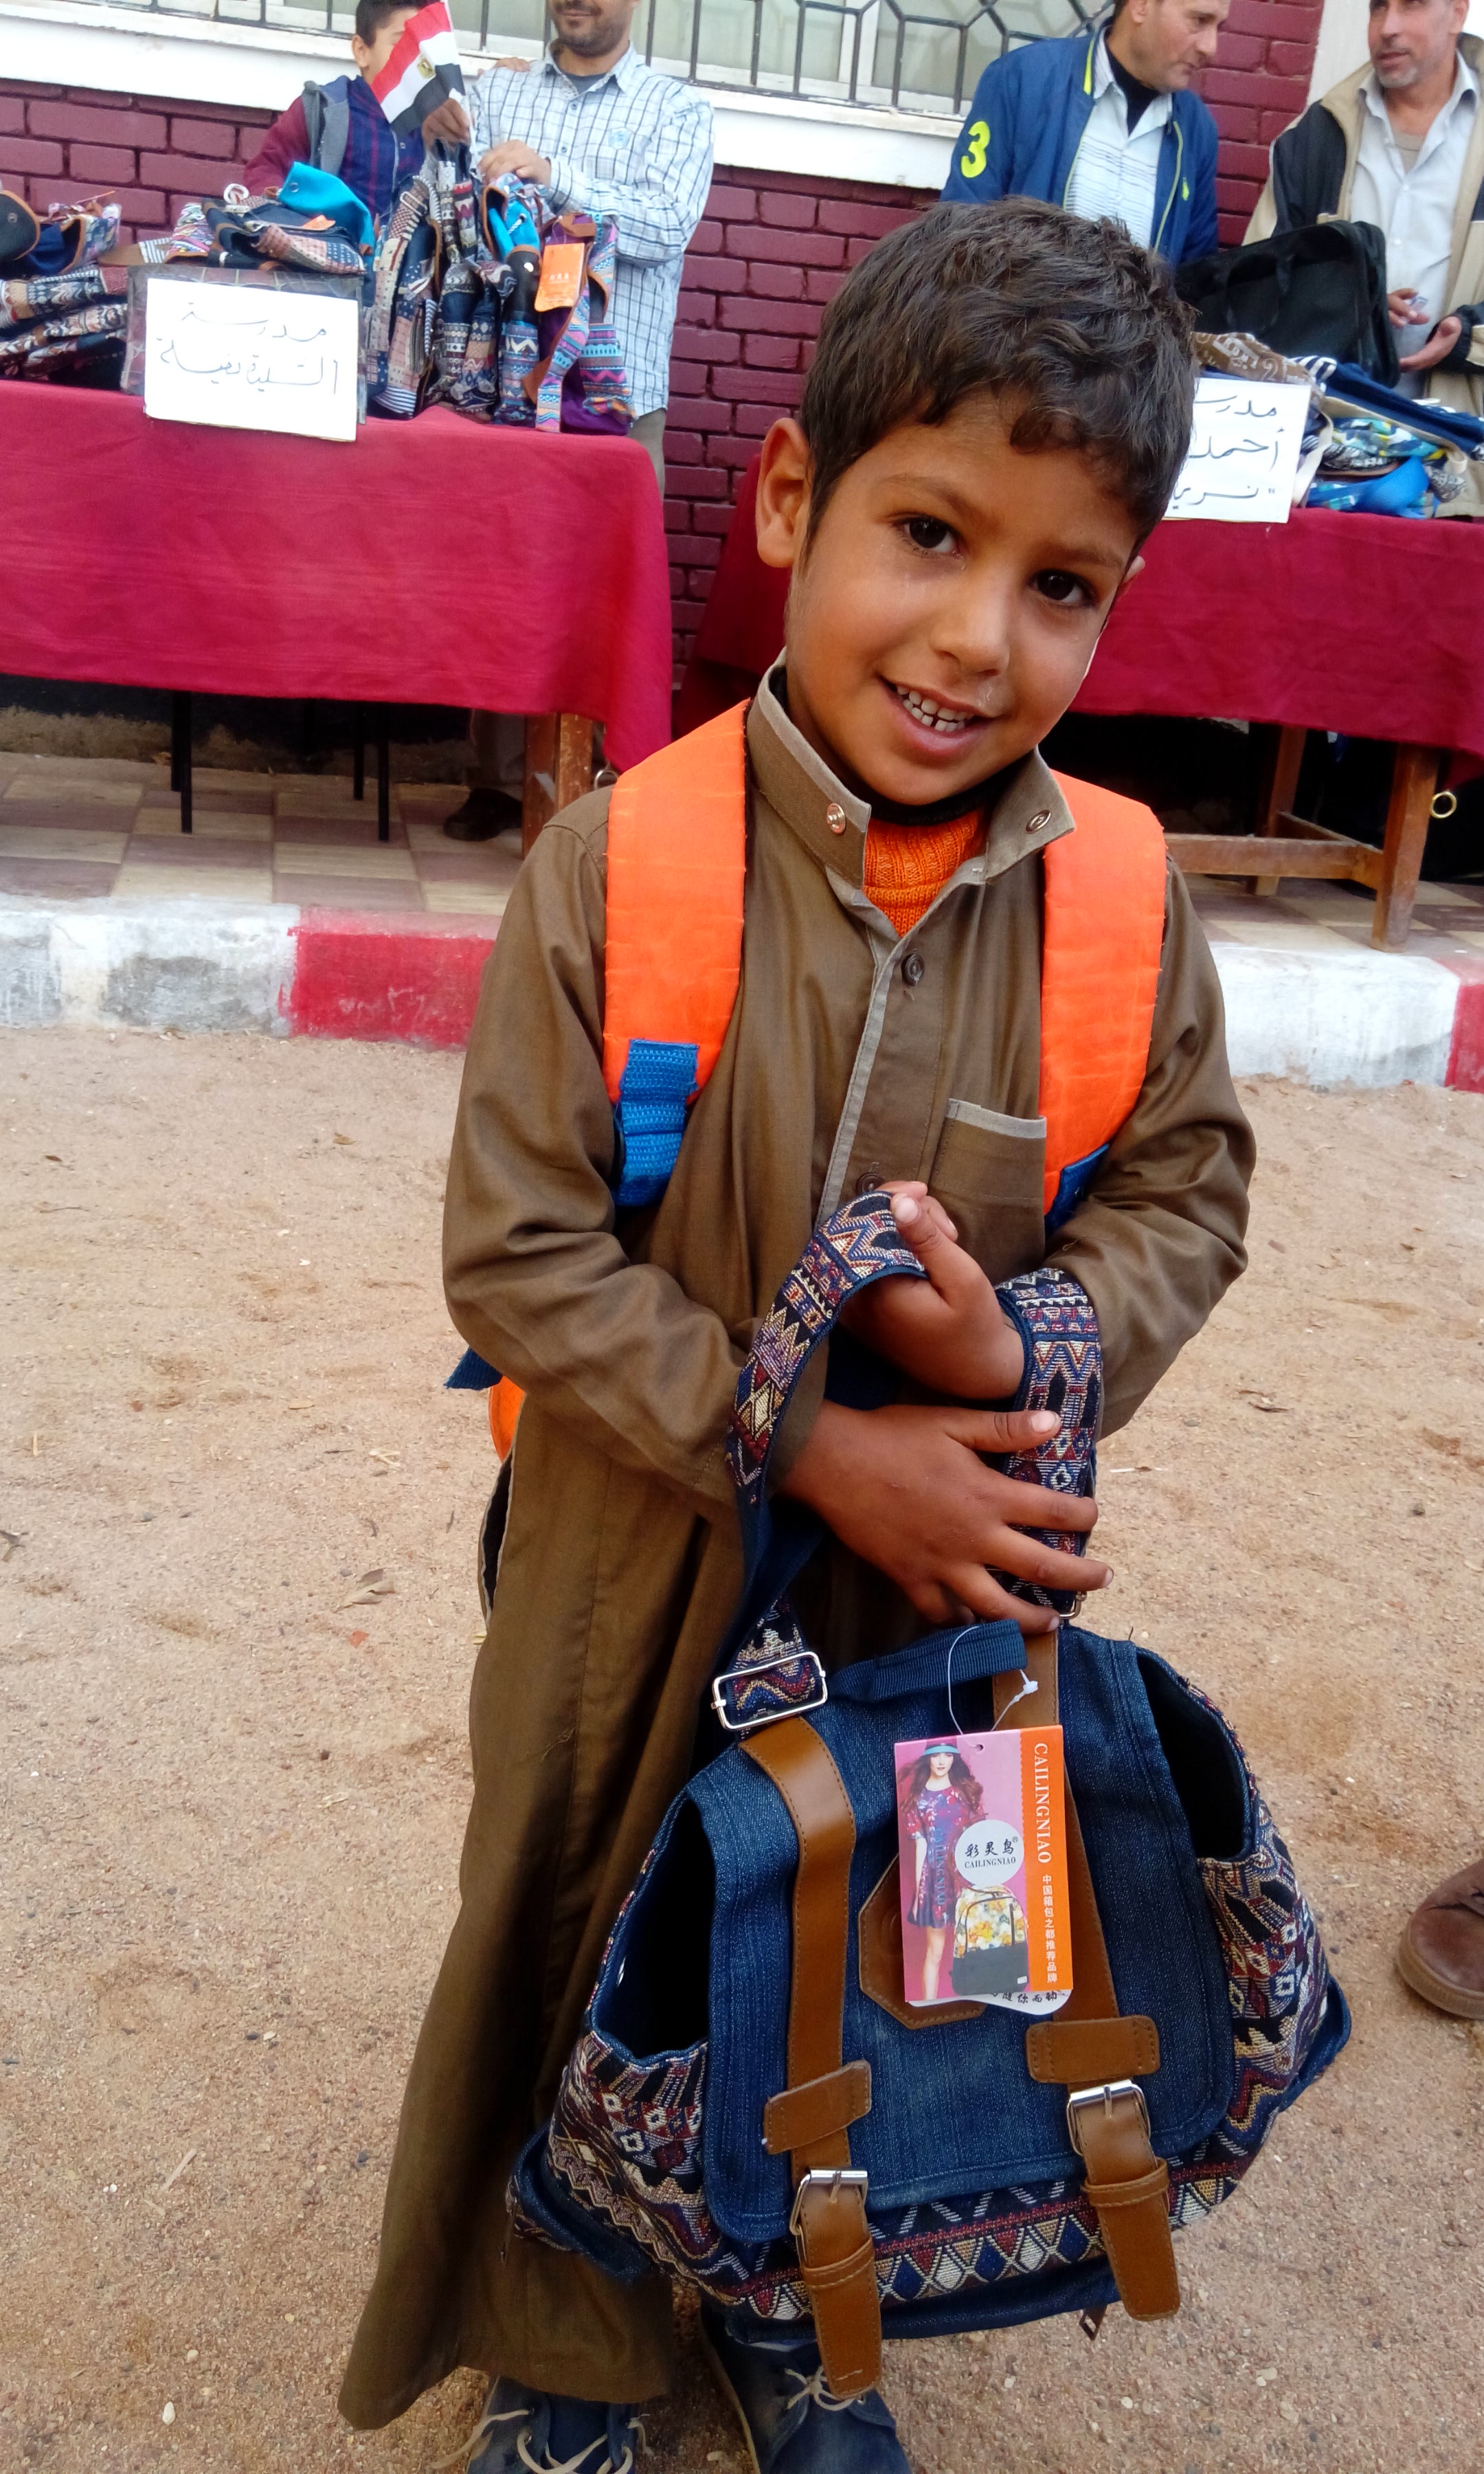 طفل يحمل شنطة الجمعية الاصدقاء